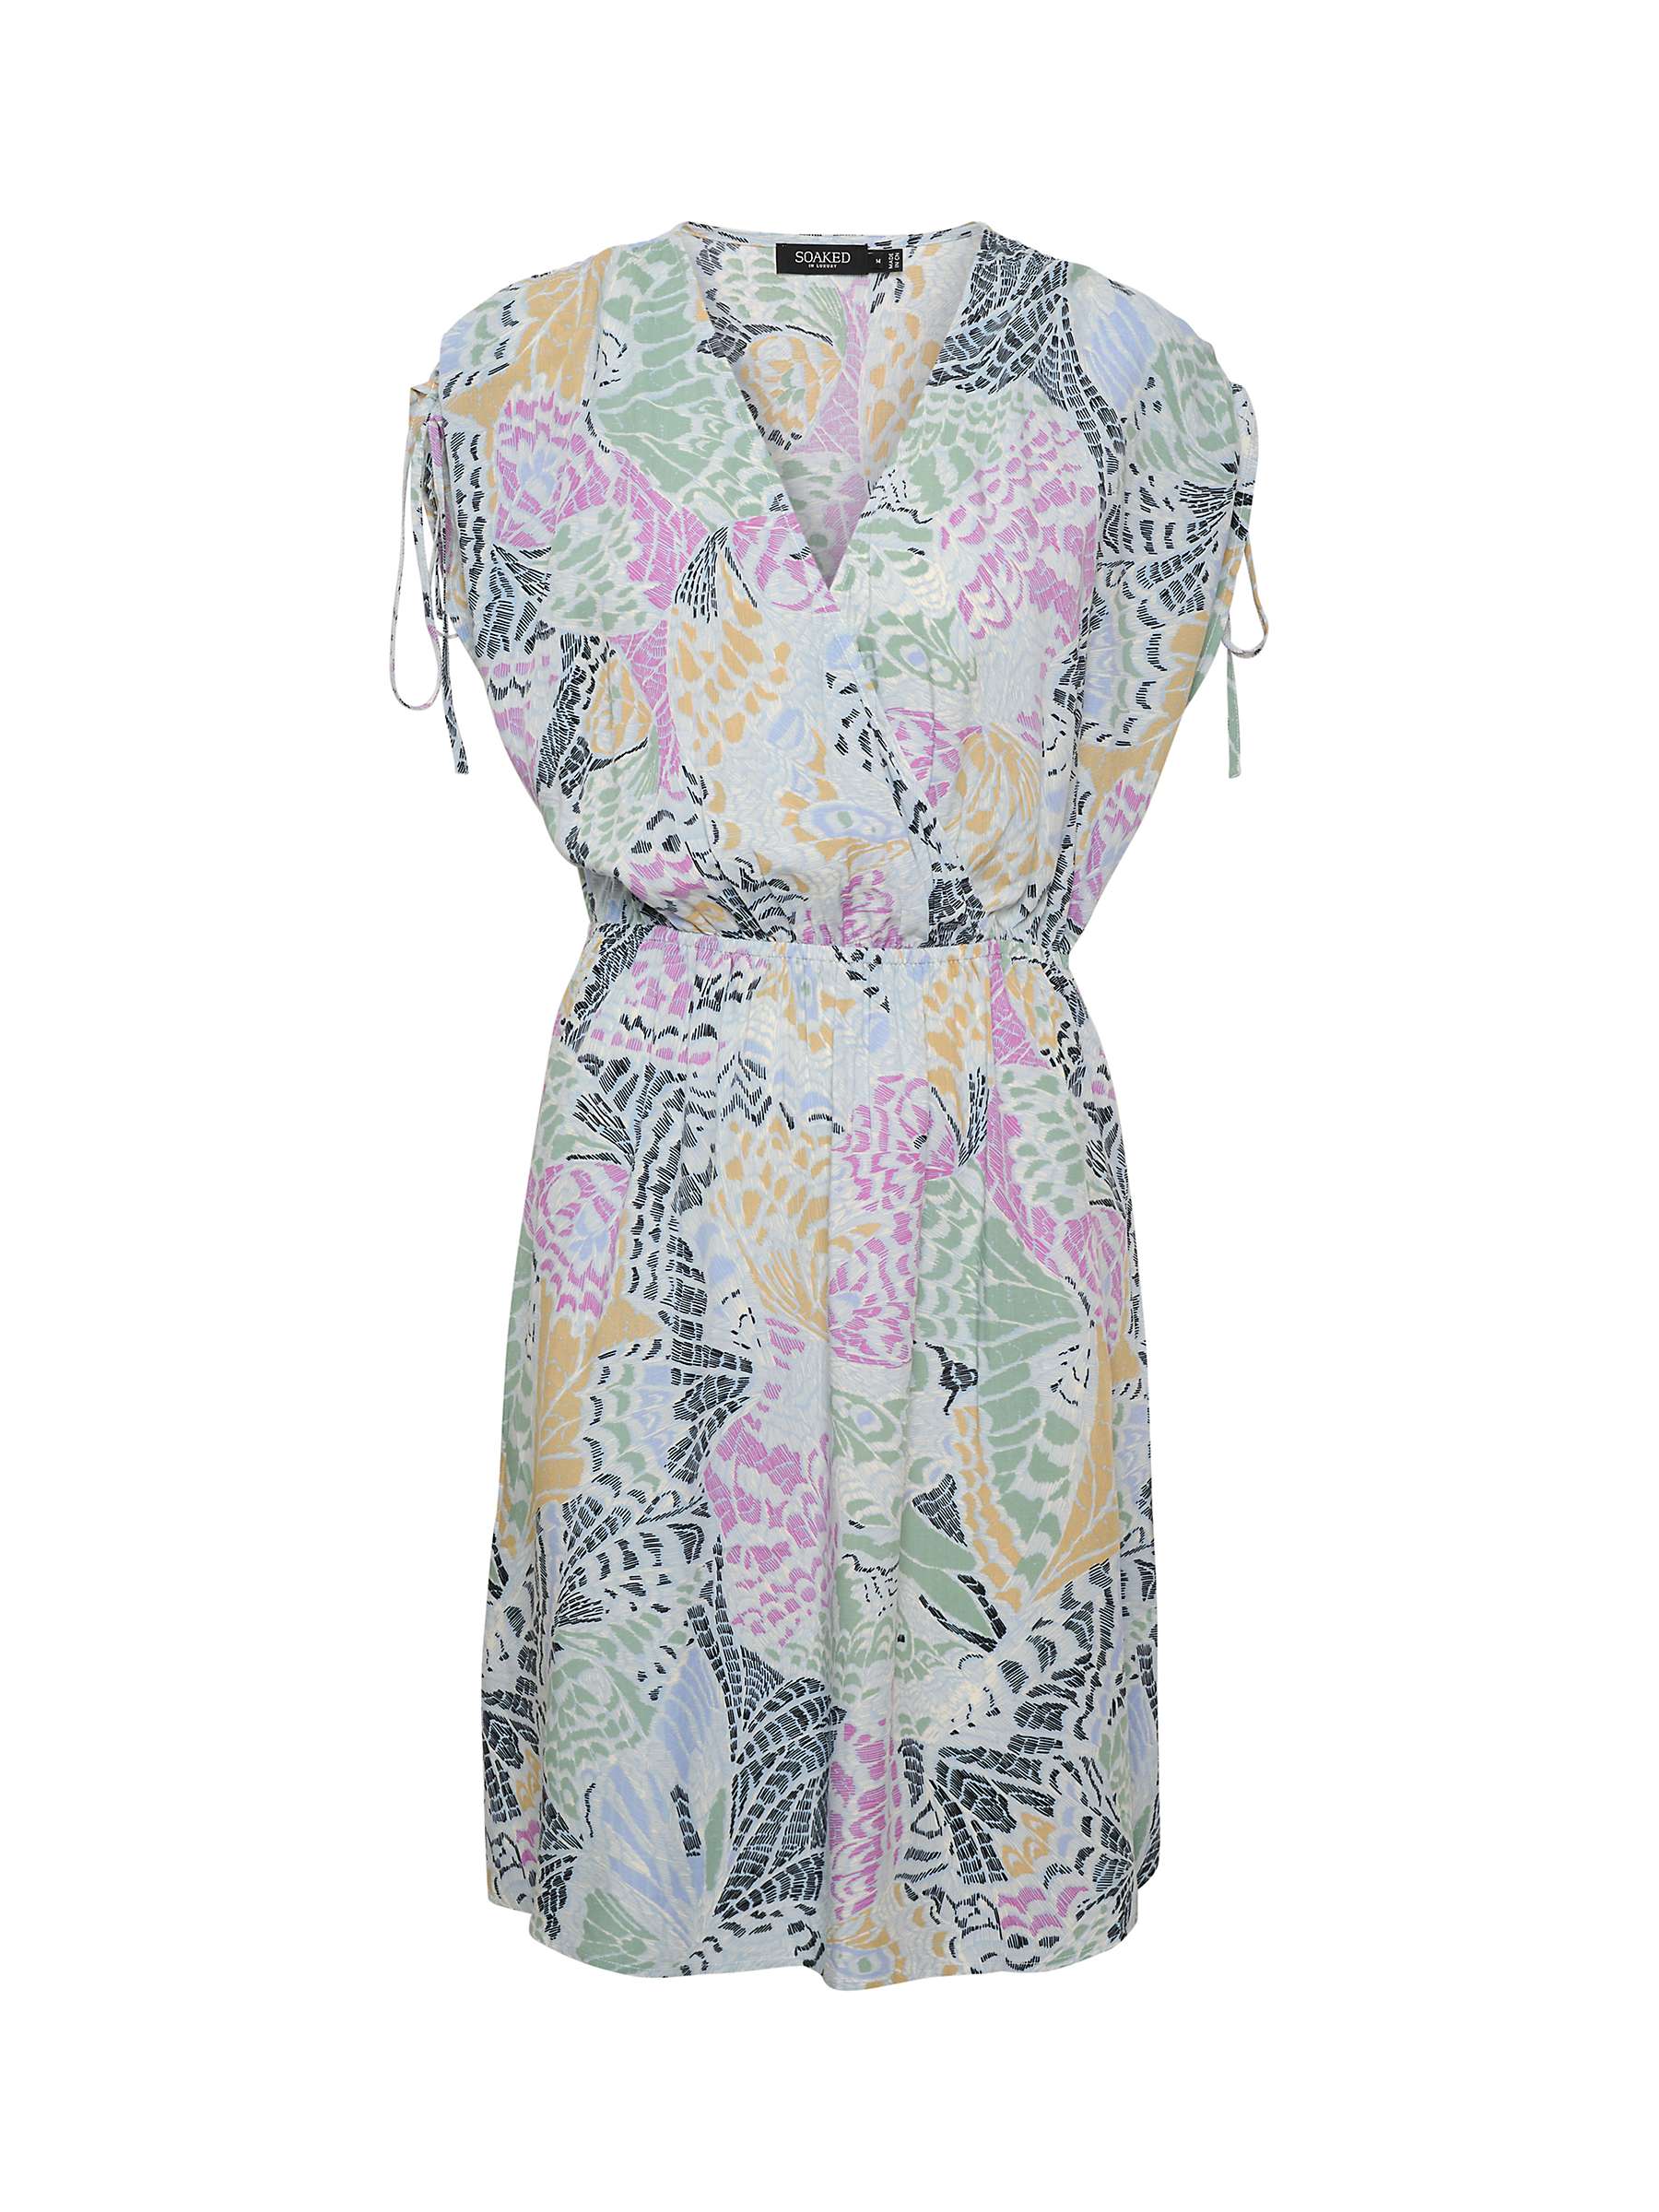 Buy Soaked In Luxury Livinna Short Sleeve Dress, Multi Online at johnlewis.com